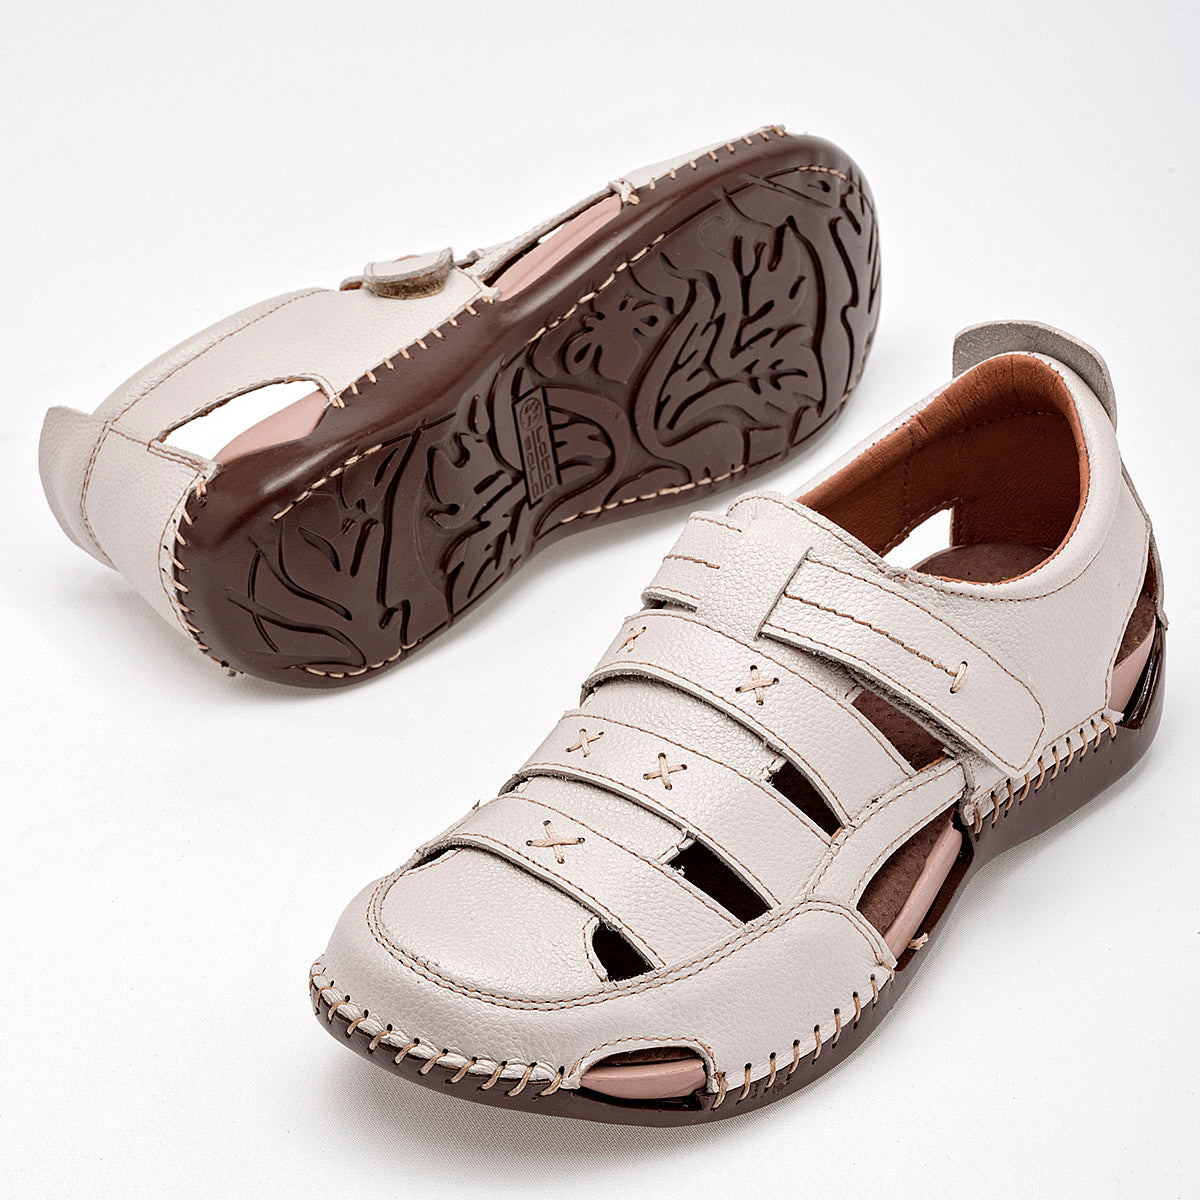 Pakar.com - Mayo: Regalos para mamá | Zapato de horma cómoda para mujer cod-125380